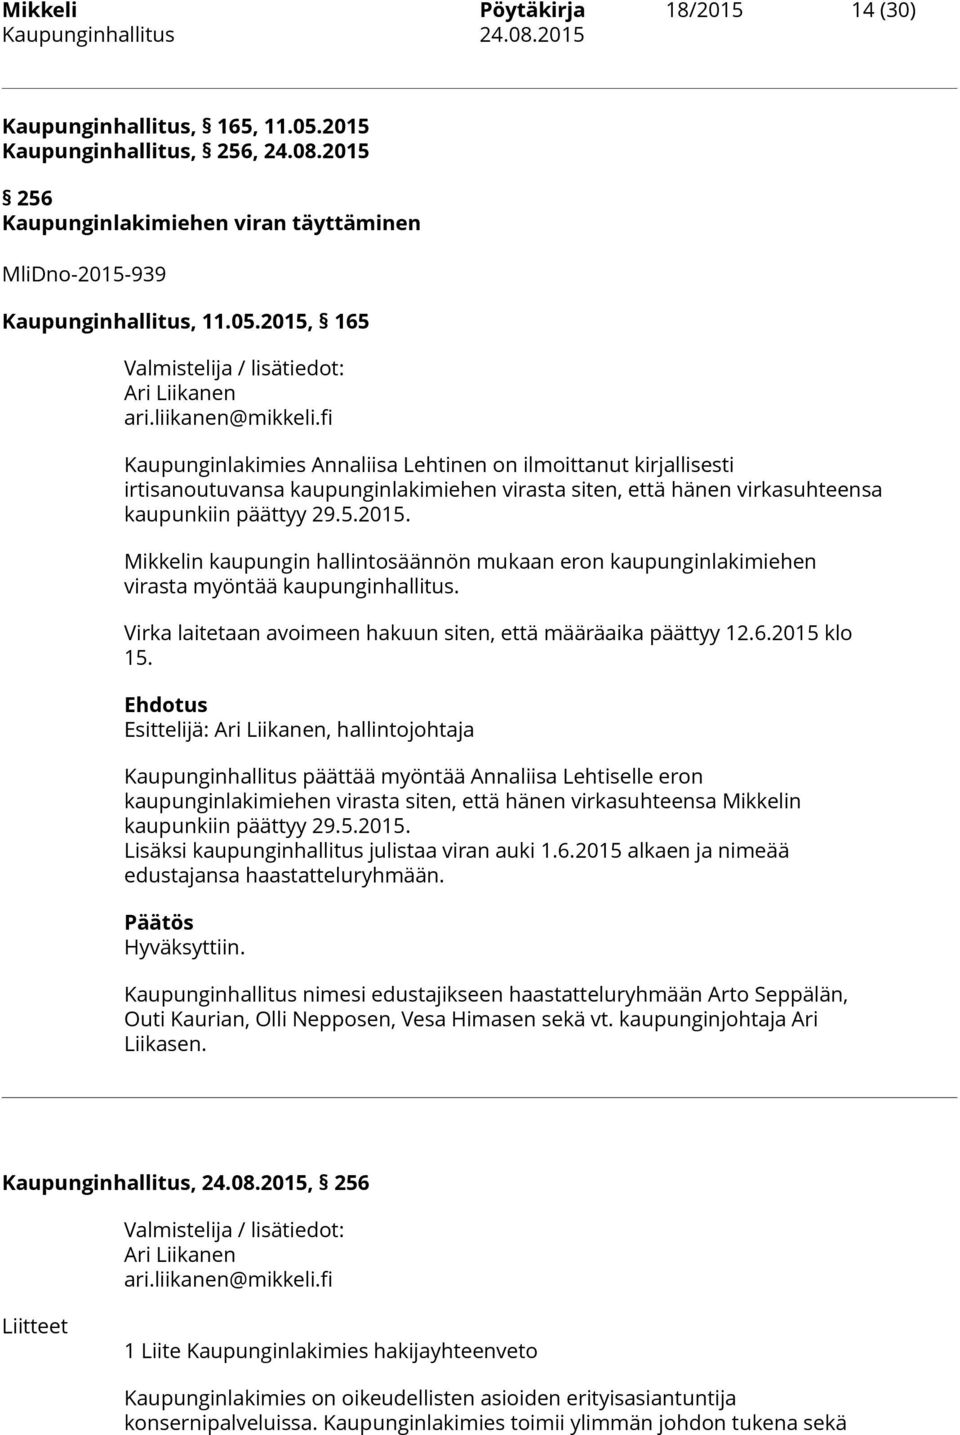 Mikkelin kaupungin hallintosäännön mukaan eron kaupunginlakimiehen virasta myöntää kaupunginhallitus. Virka laitetaan avoimeen hakuun siten, että määräaika päättyy 12.6.2015 klo 15.